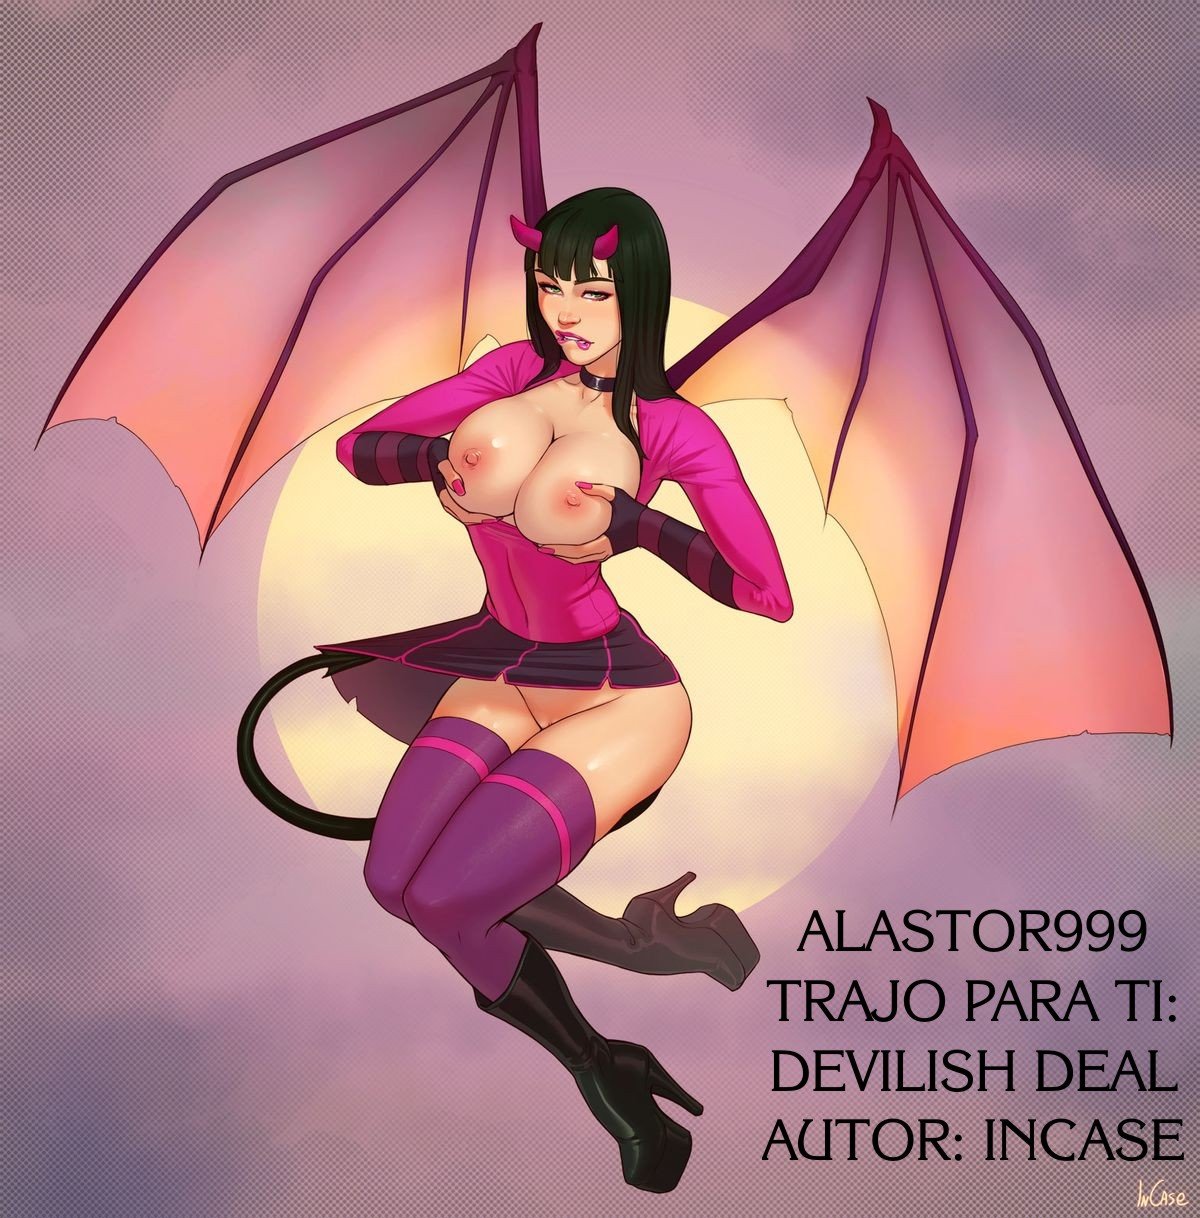 A Devilish Deal - 5